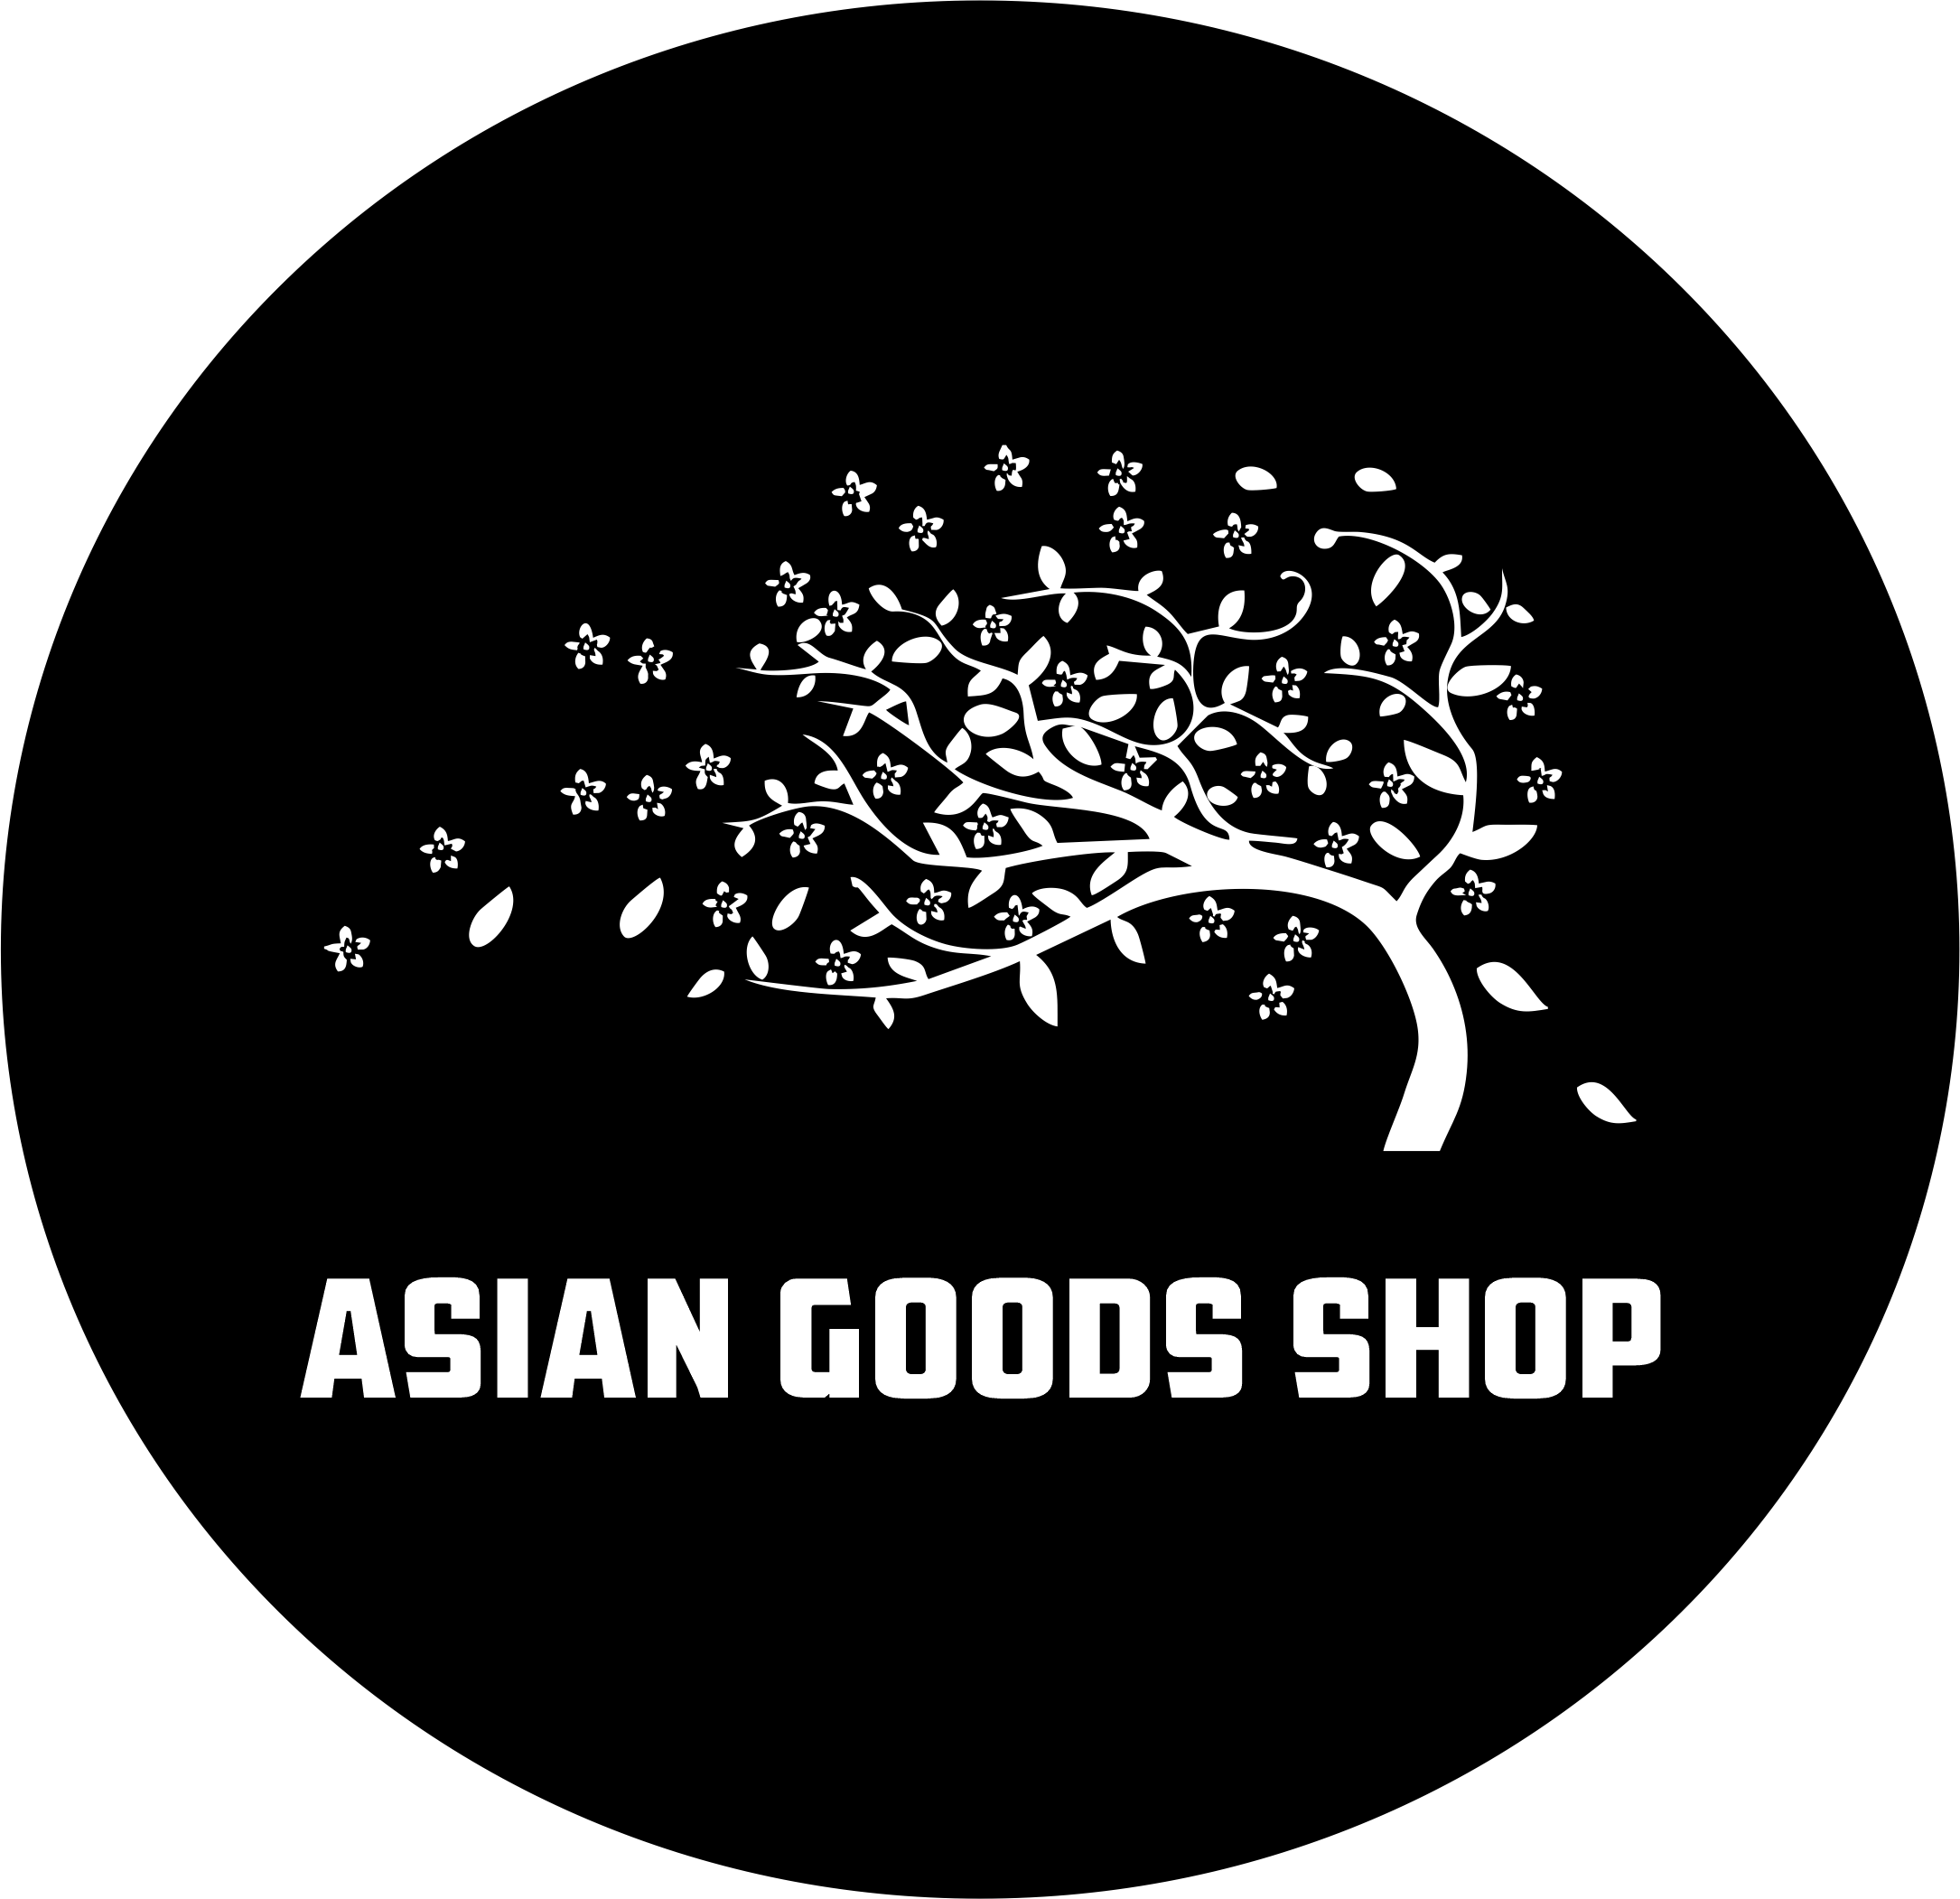 ASIAN GOODS SHOP